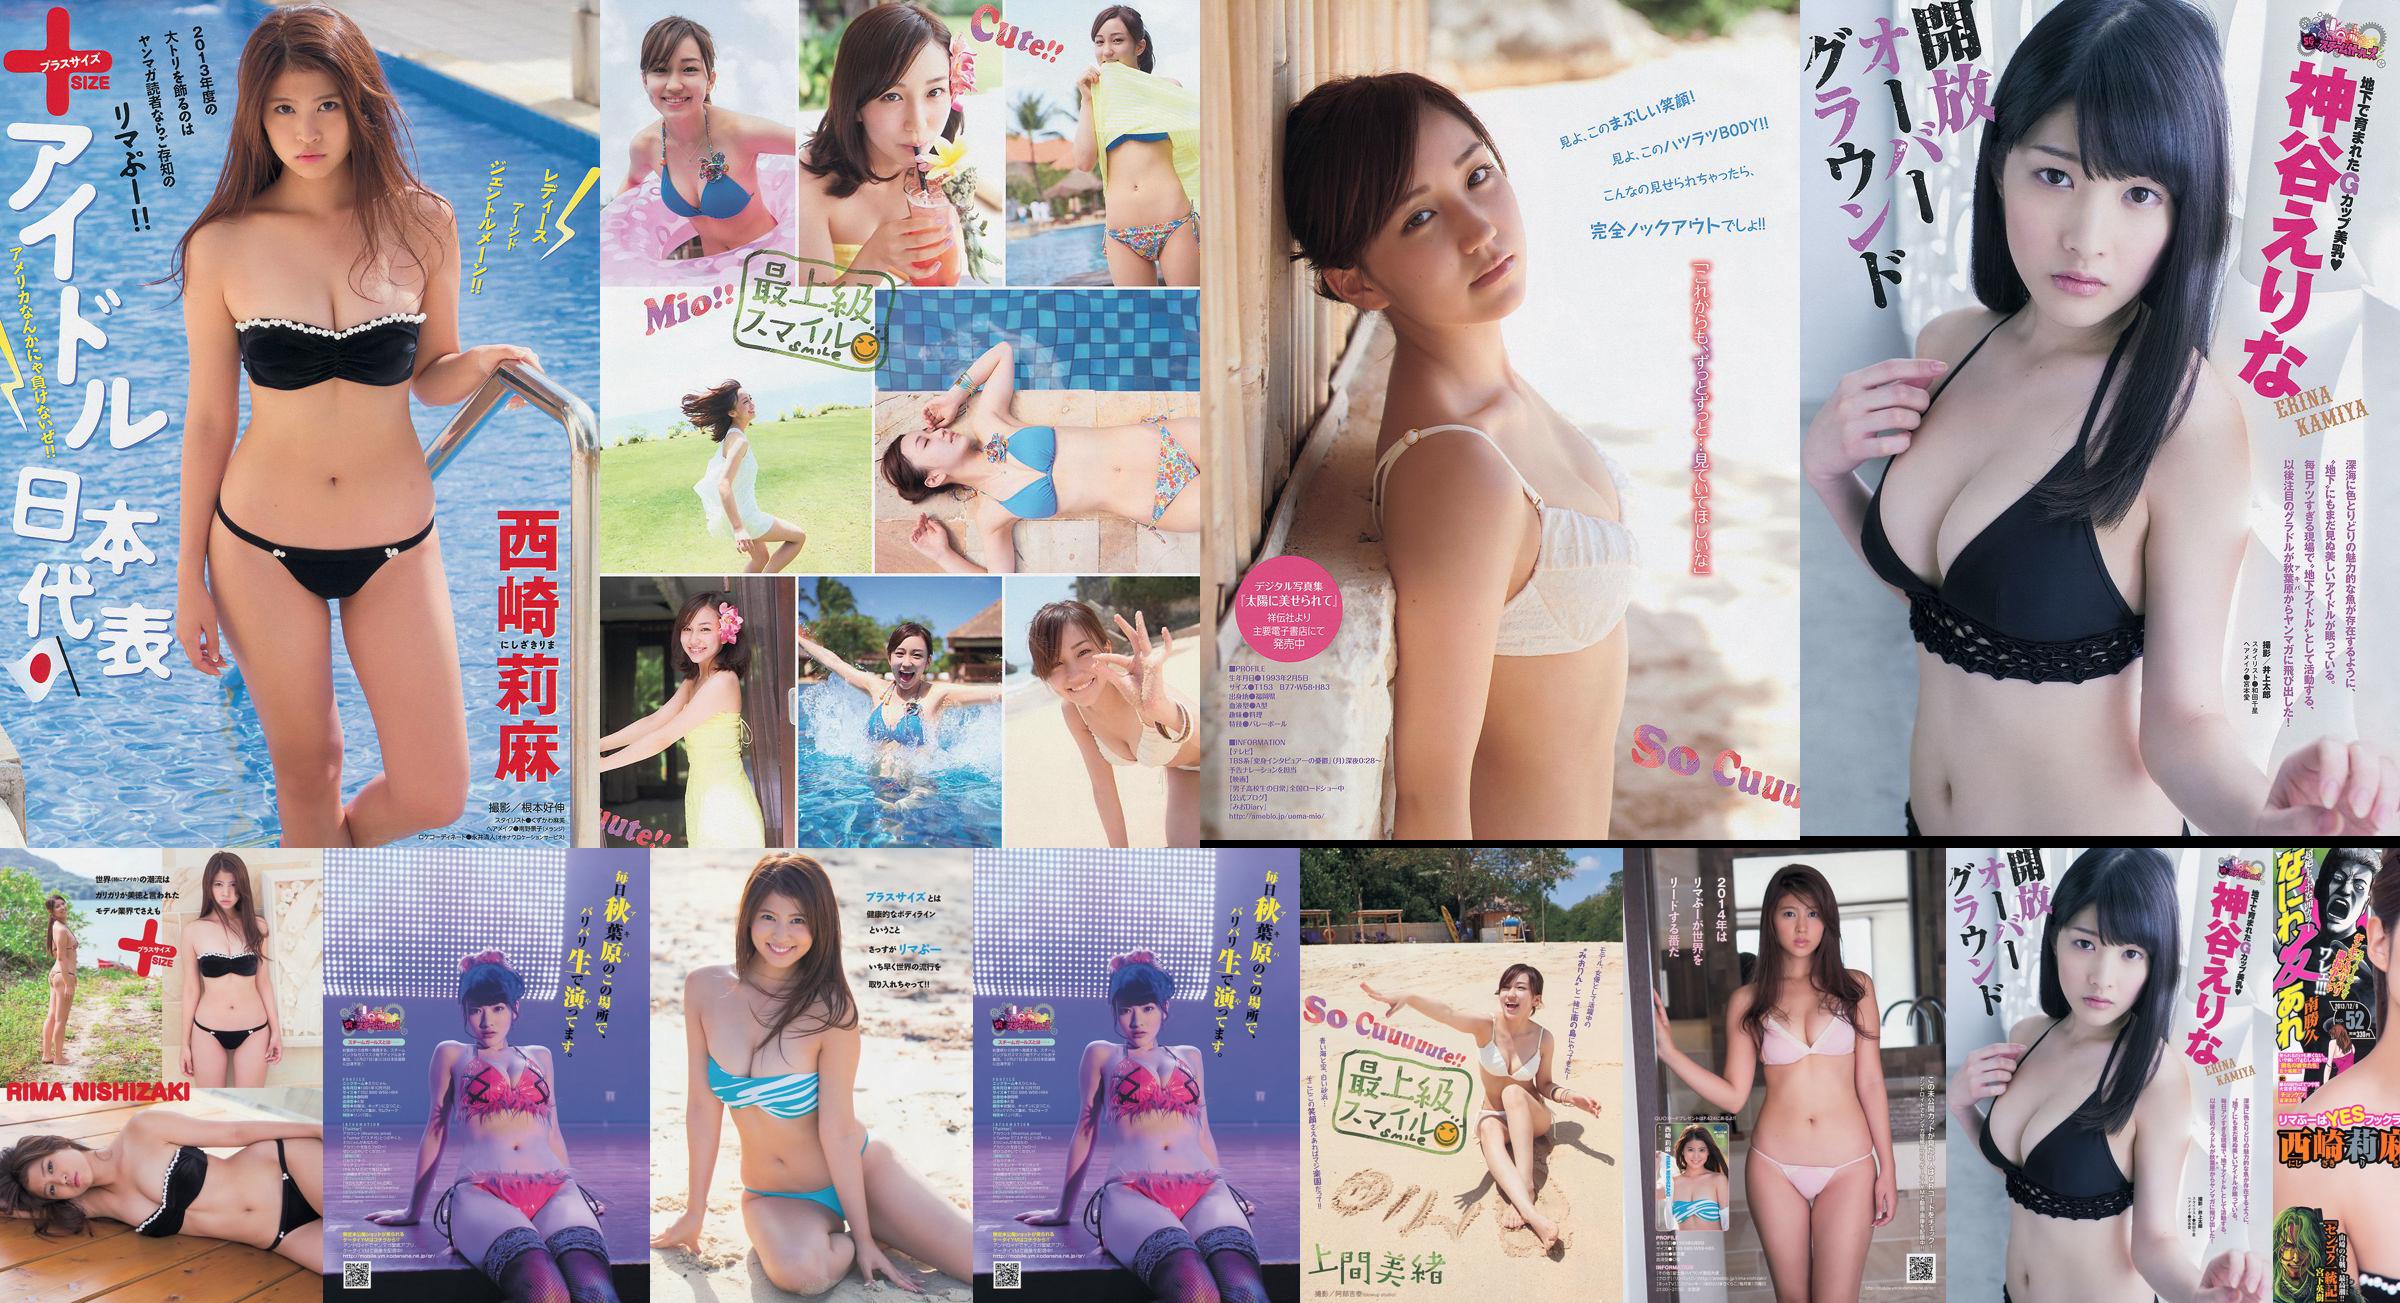 [นิตยสาร Young] Rima Nishizaki Mio Uema Erina Kamiya 2013 No.52 Photo Moshi No.bfd02b หน้า 6